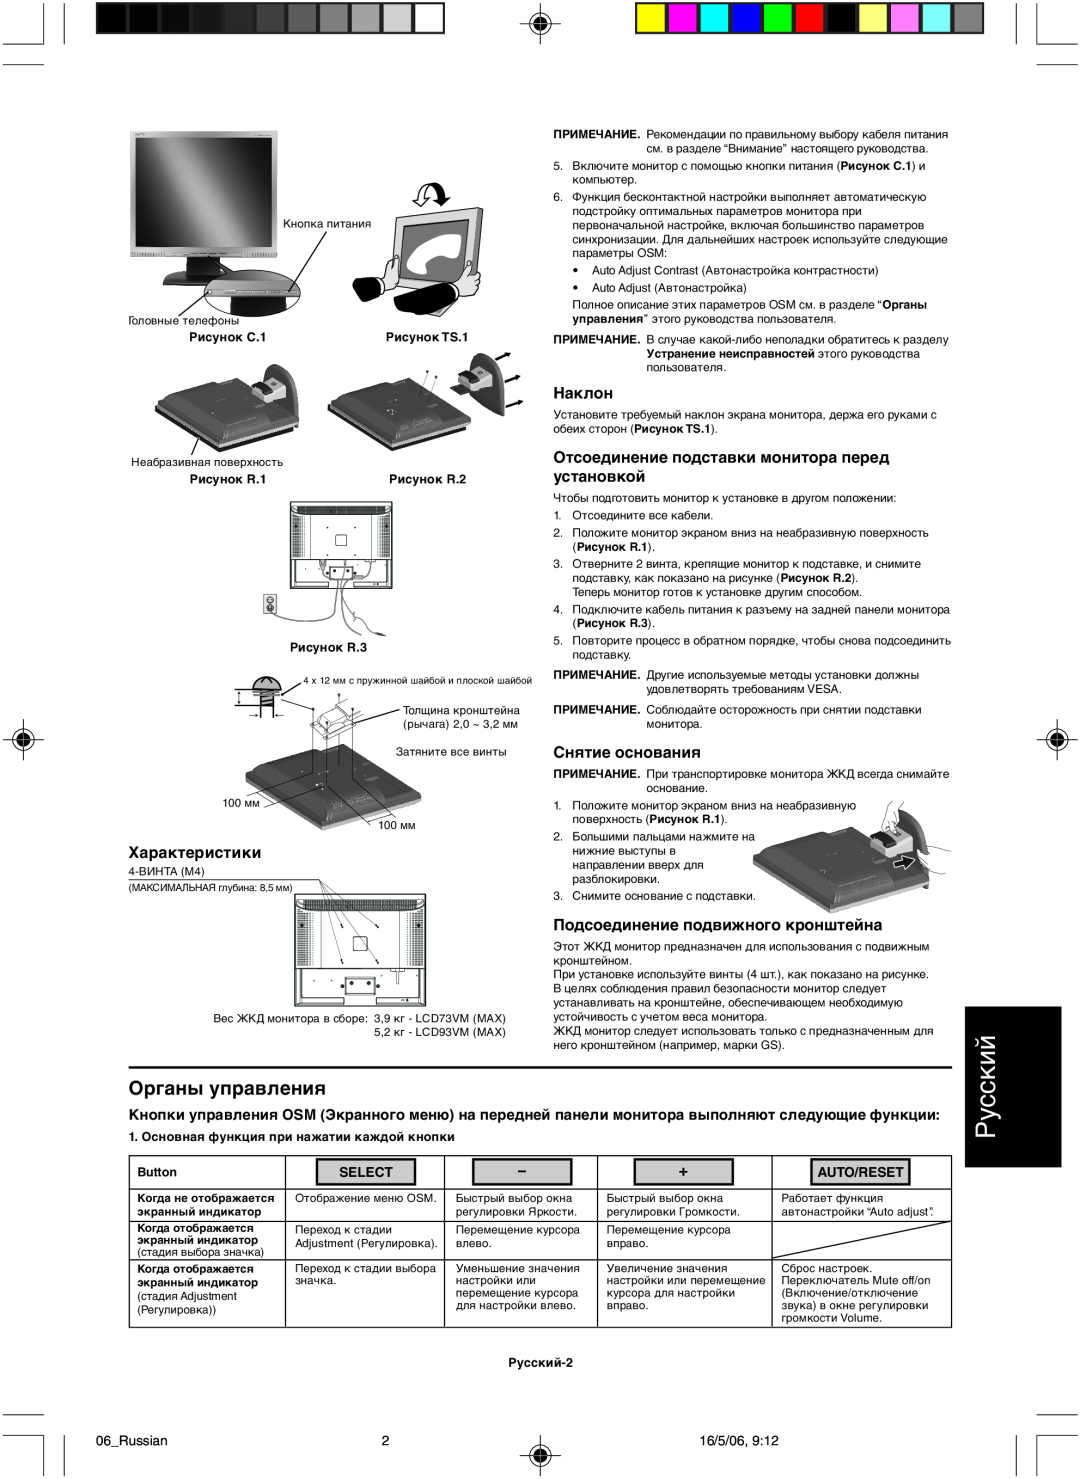 NEC LCD73VM user manual Органы управления, Русский, Select, Auto/Reset 